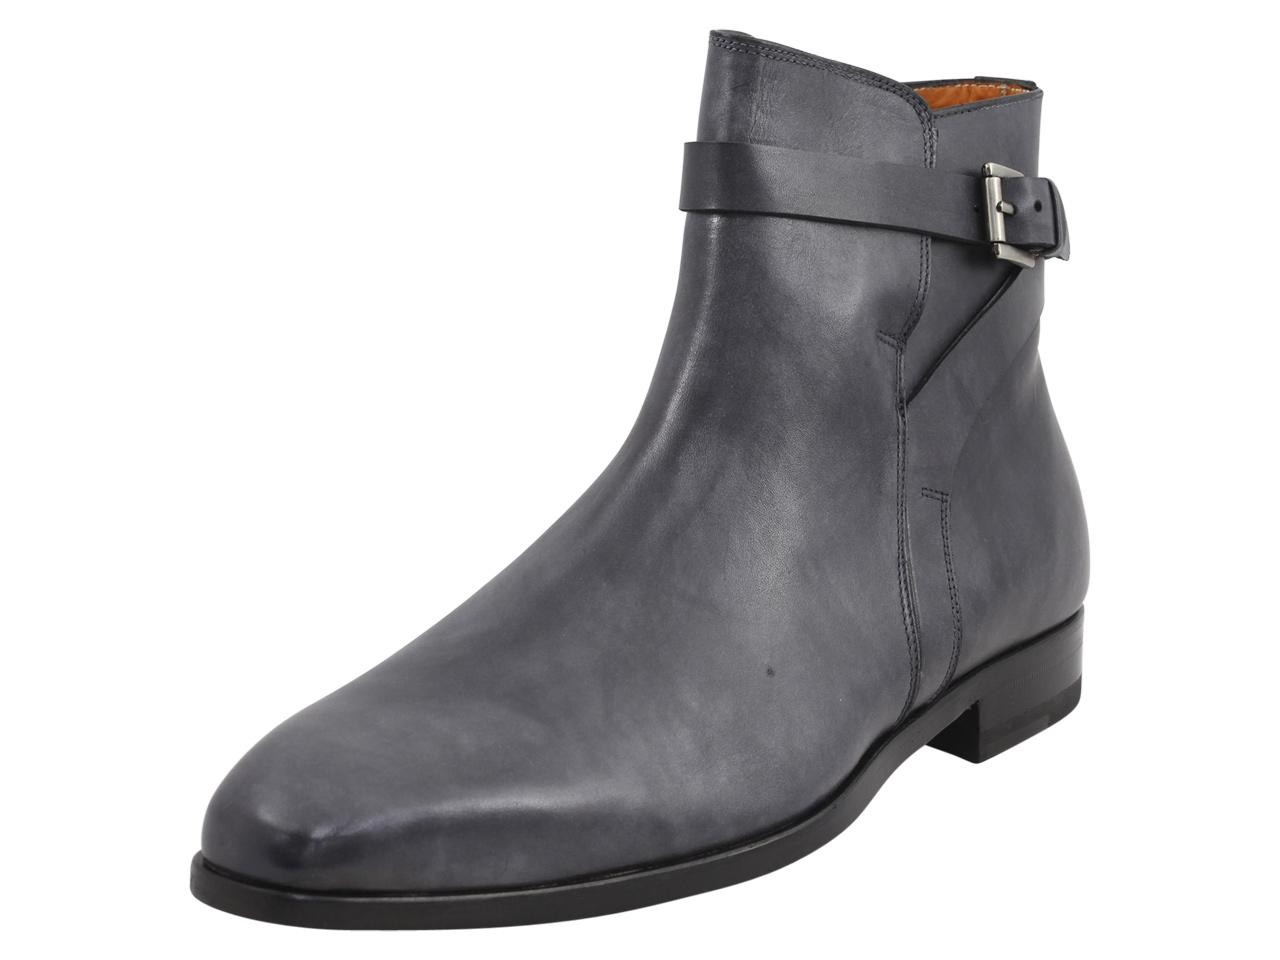 Mezlan Men's Viso Leather Ankle Boots Shoes - Black - 9.5 D(M) US